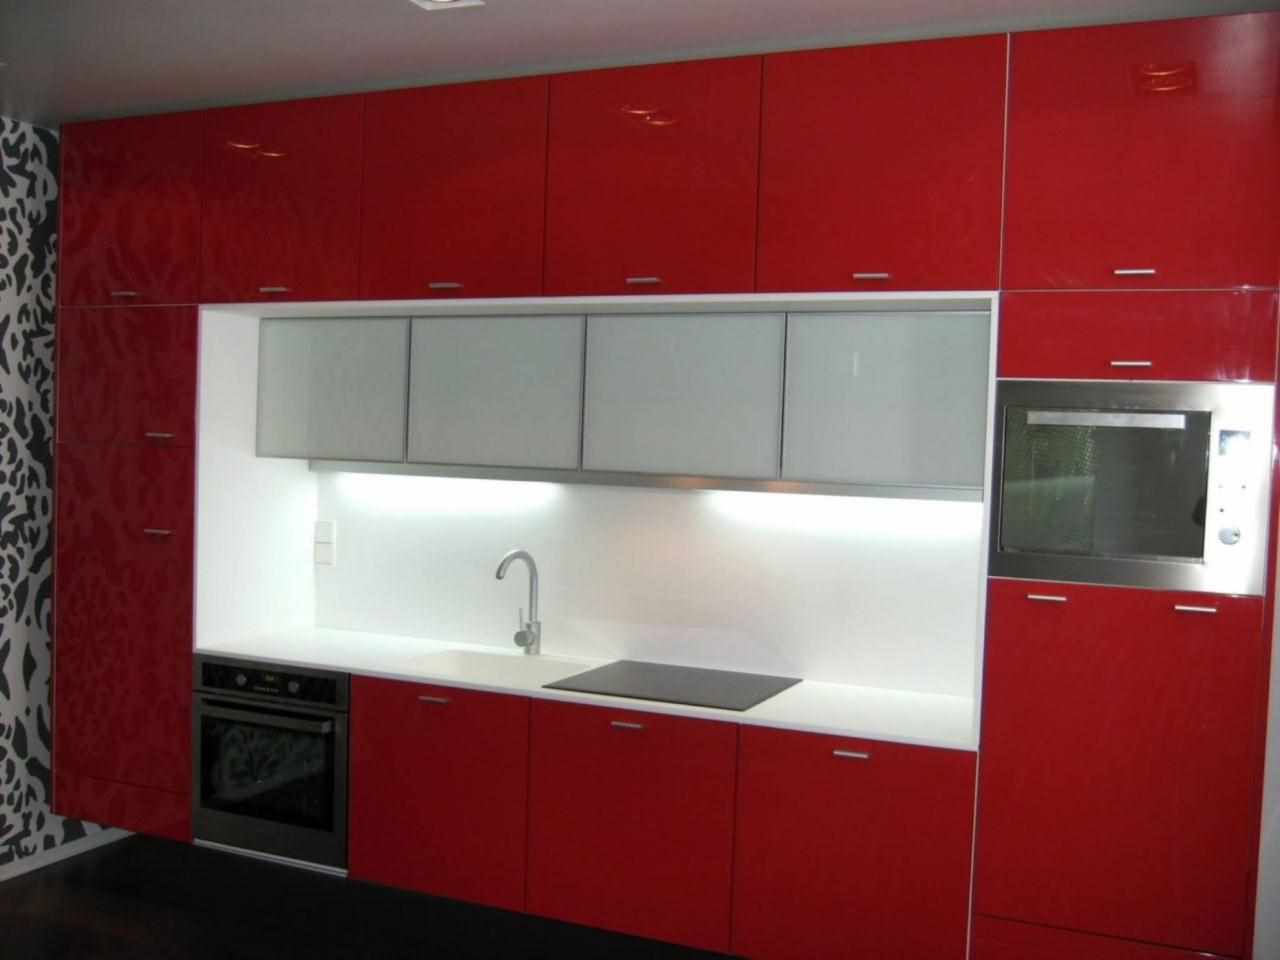 et eksempel på et smukt interiør i et rødt køkken